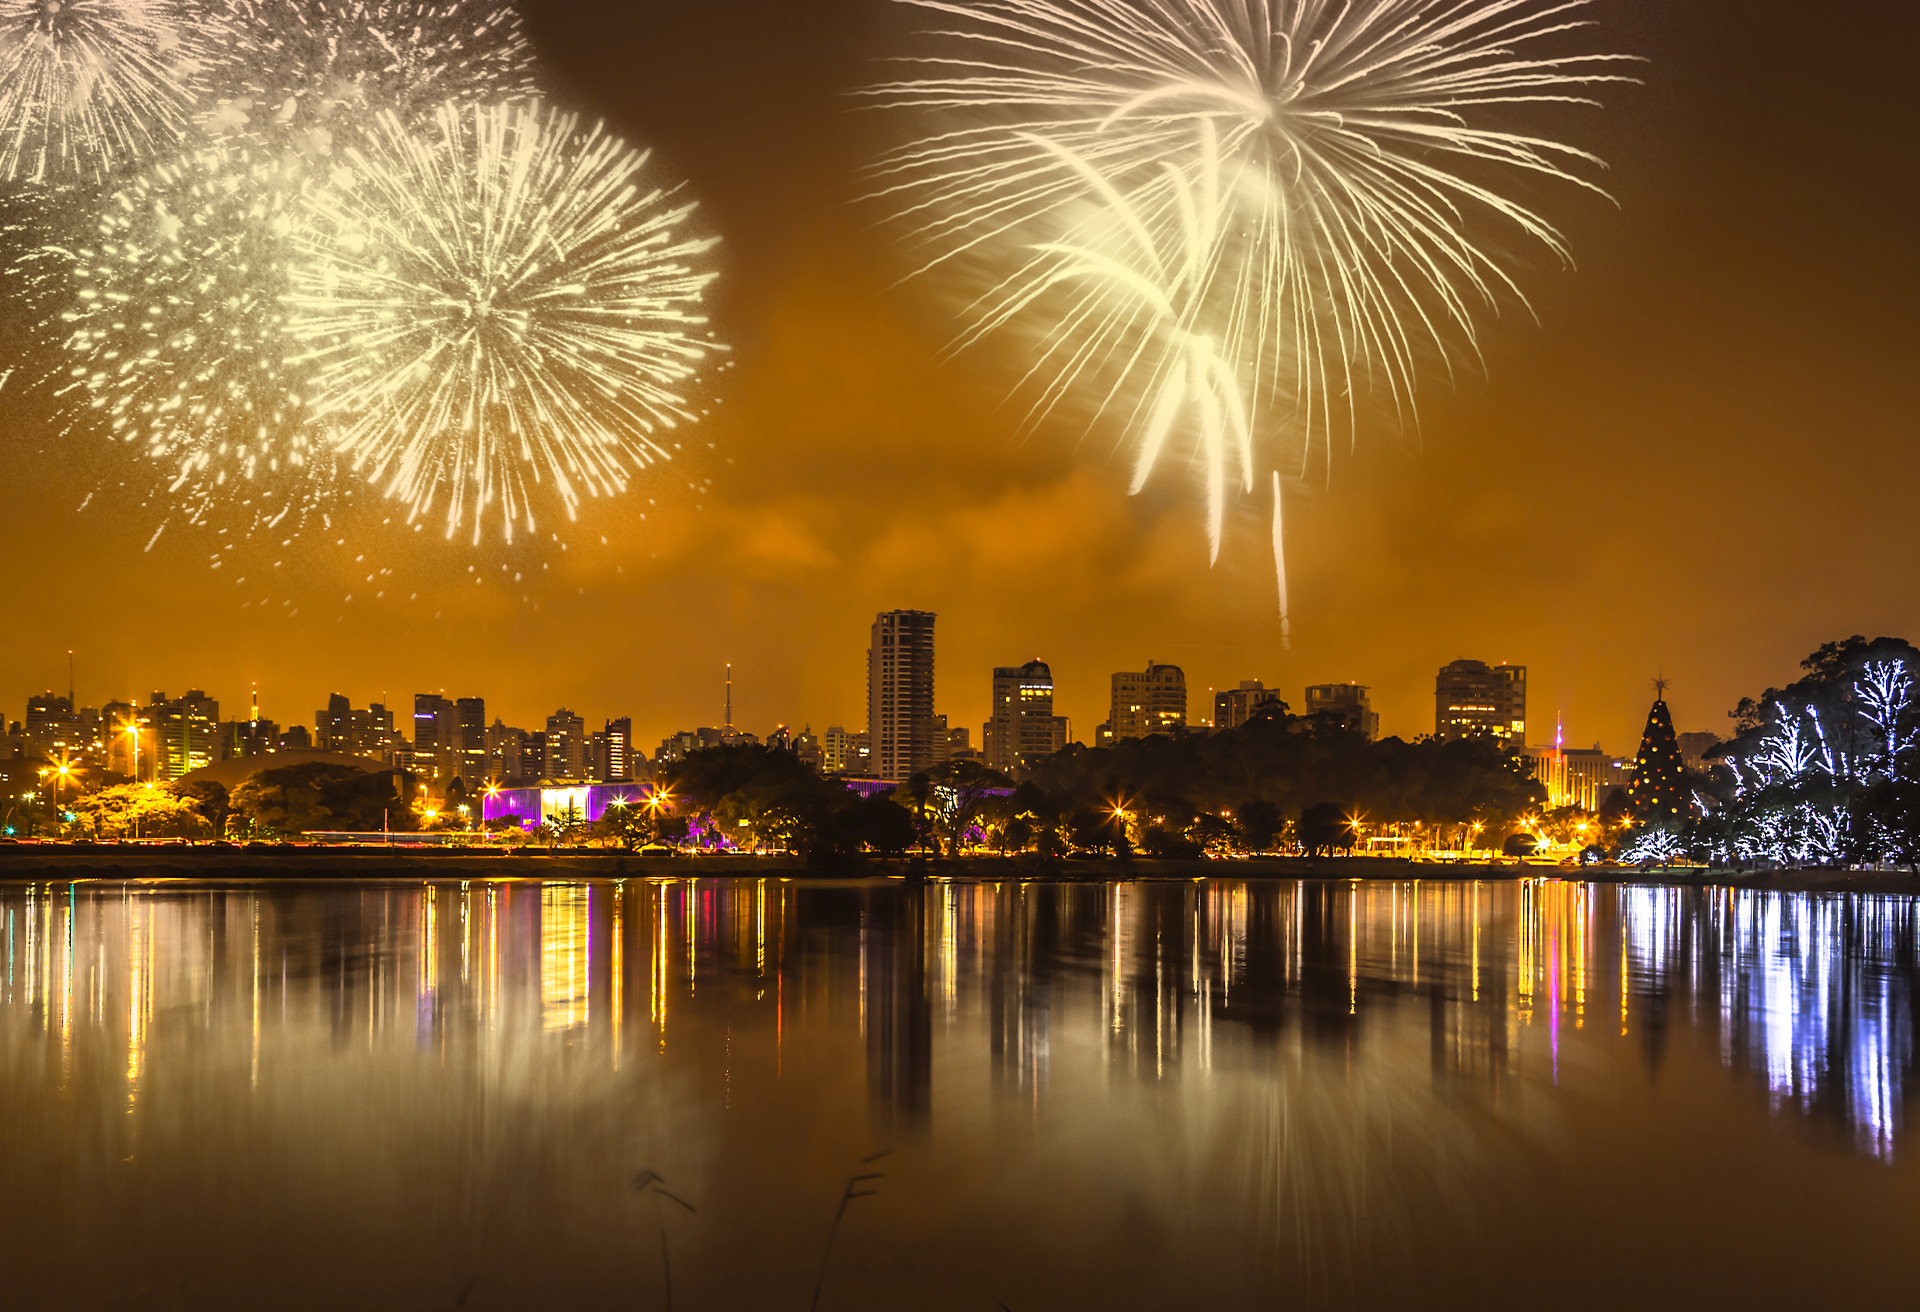 foto de uma cidade à noite, na beira de um rio, iluminada por fogos de artifício